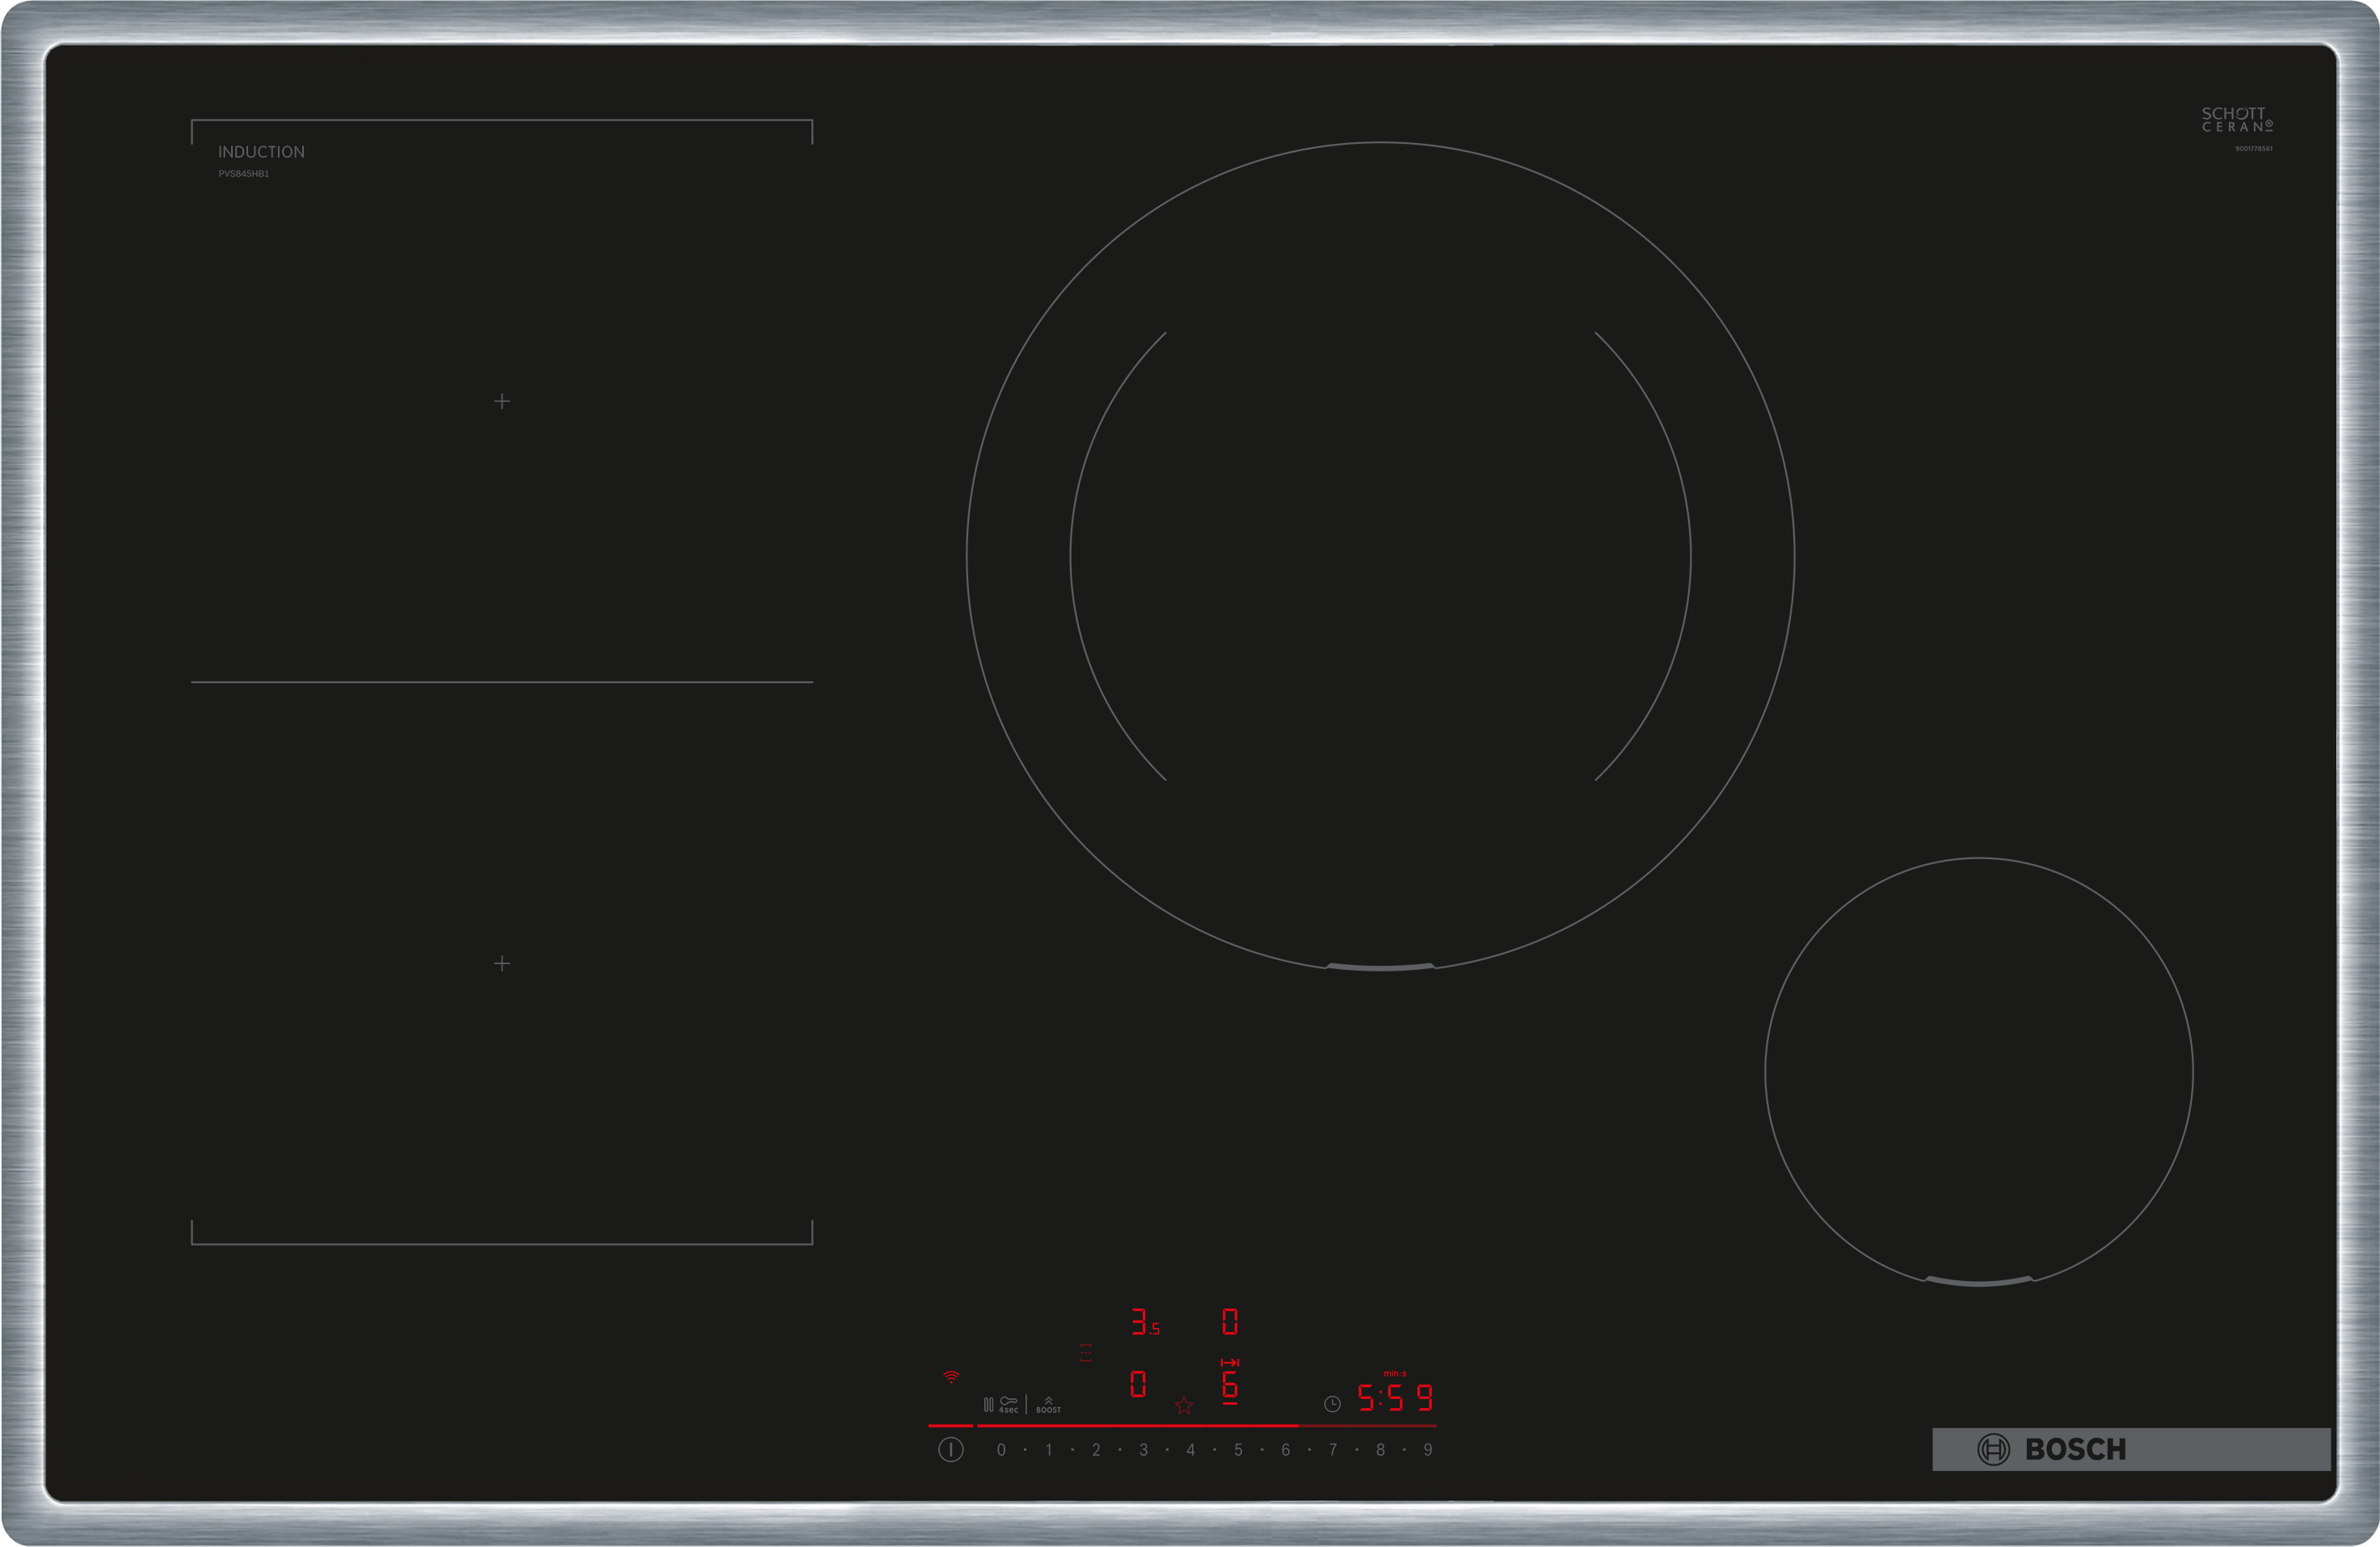 Serija 6, Indukciona ploča za kuvanje, 80 cm, Crna, ugradnja sa okvirom, PVS845HB1E